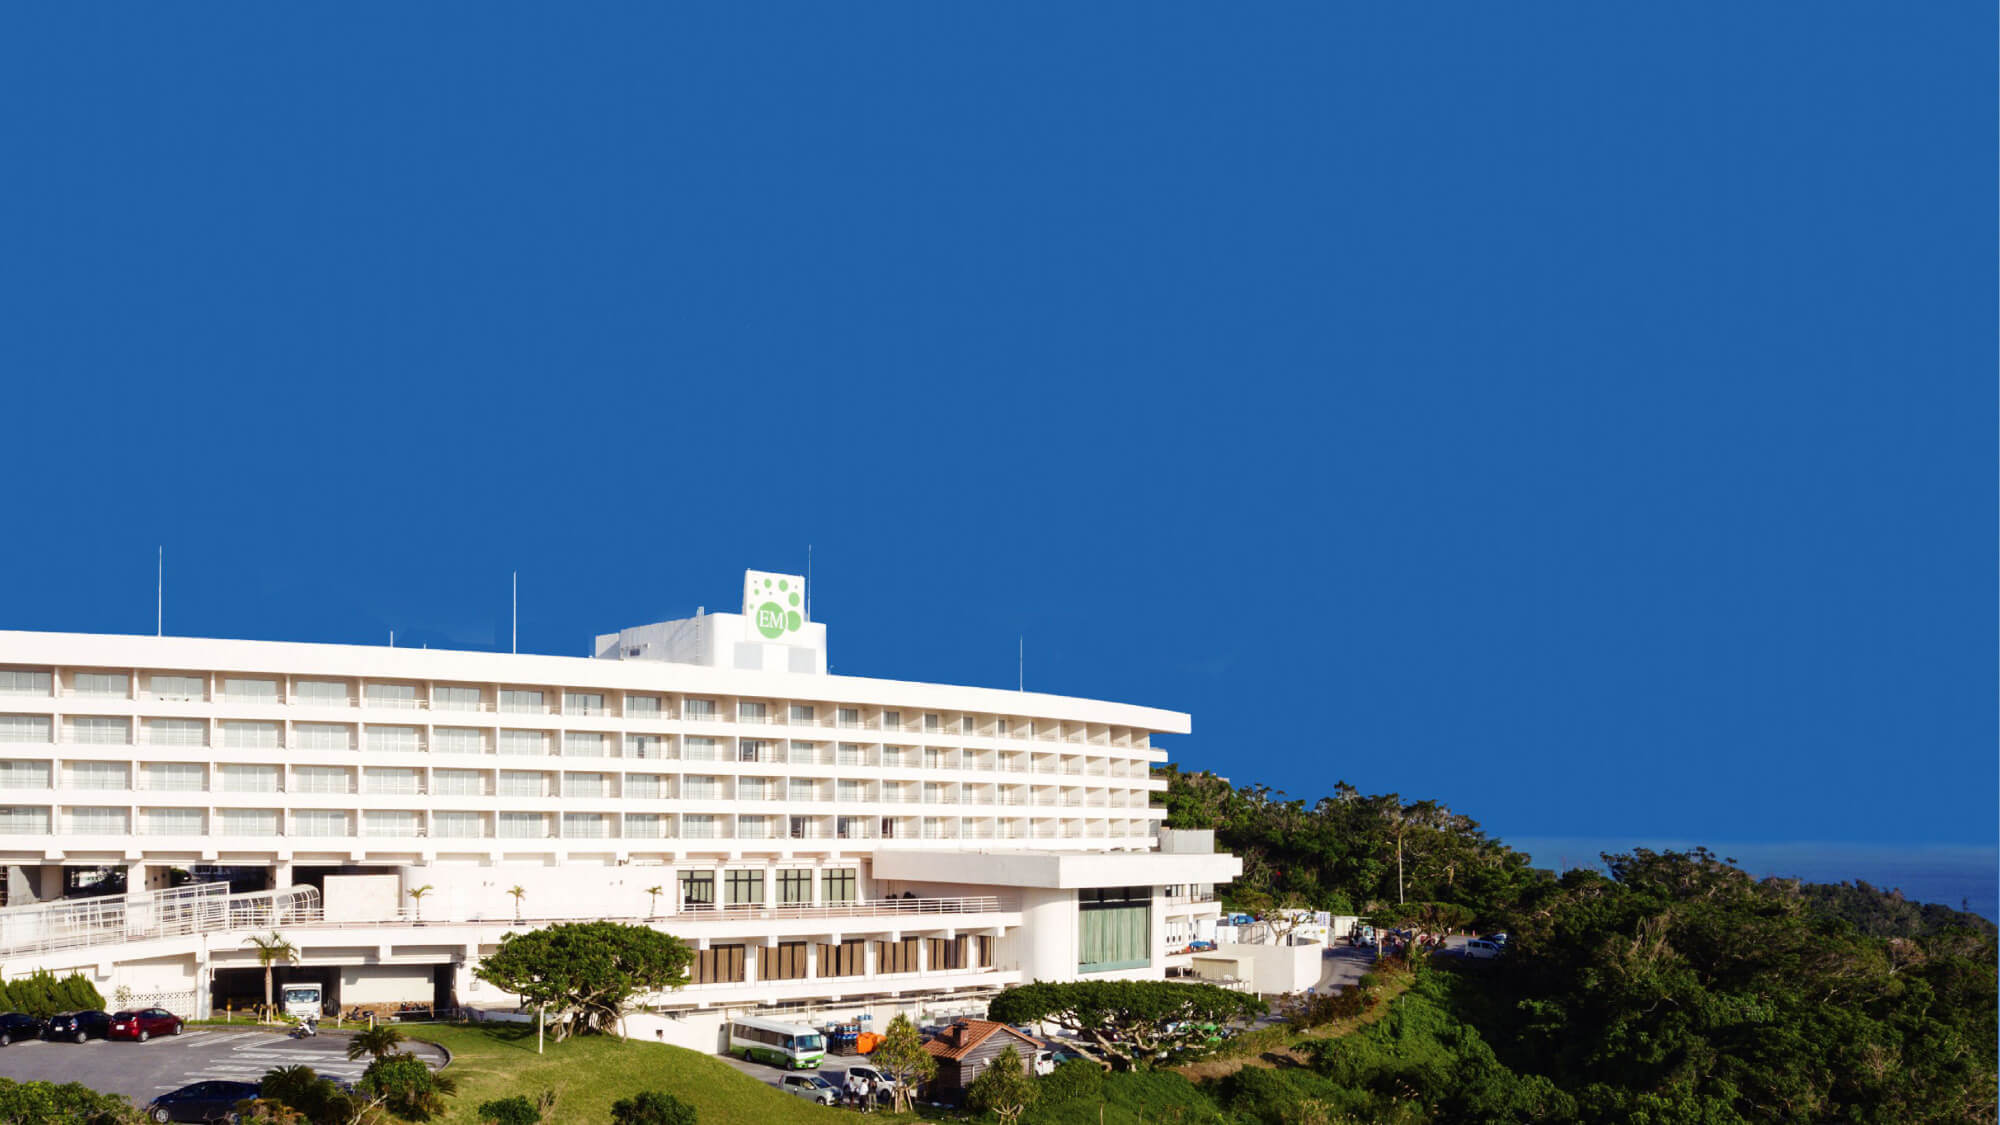 ｅｍウェルネスリゾートコスタビスタ沖縄ホテル スパの施設情報 His旅プロ 国内旅行ホテル最安値予約